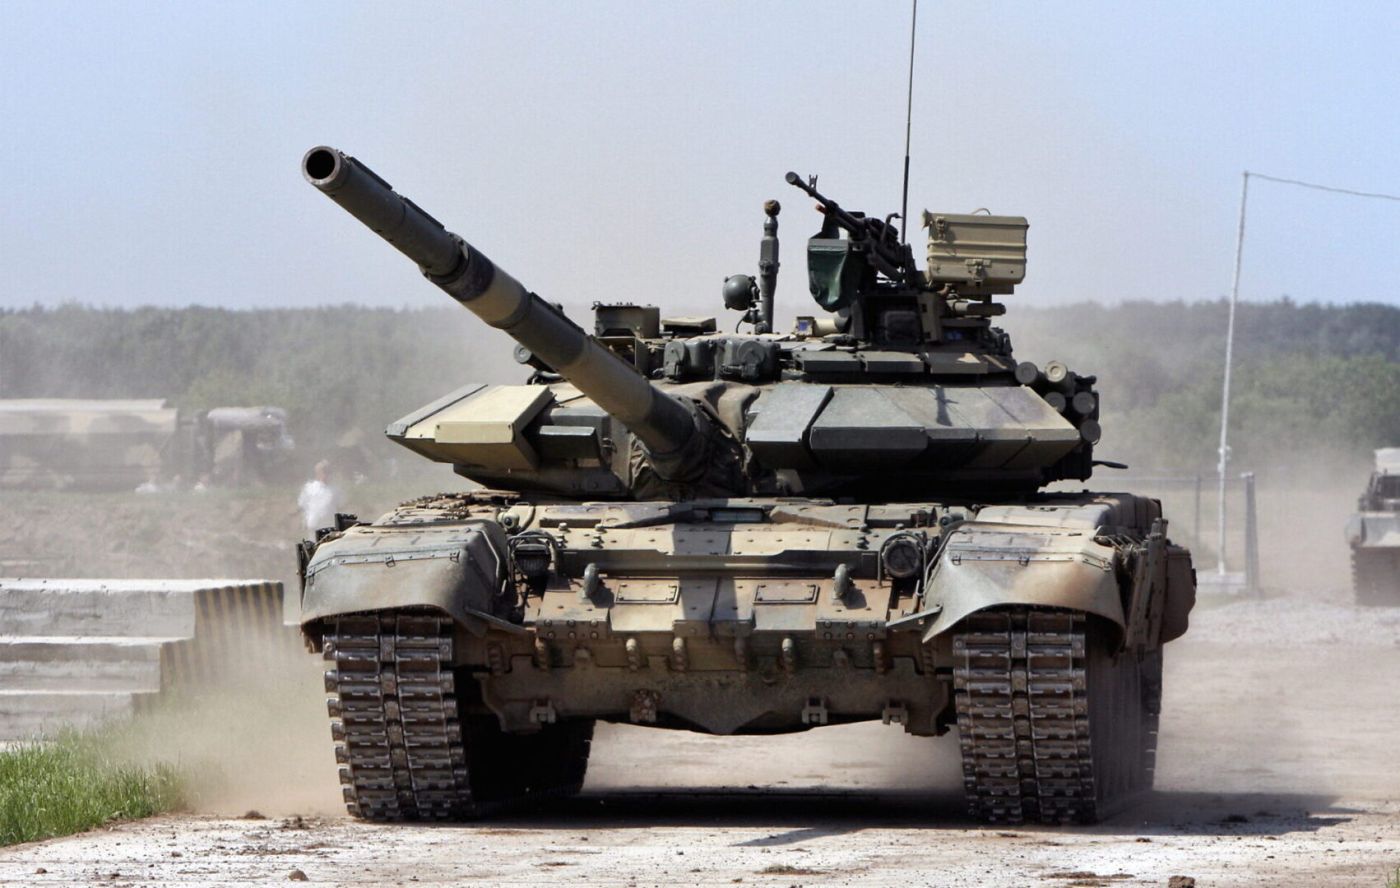 Παραδόθηκαν επιπλέον μονάδες του άρματος μάχης Τ-90Μ στον ρωσικό Στρατό